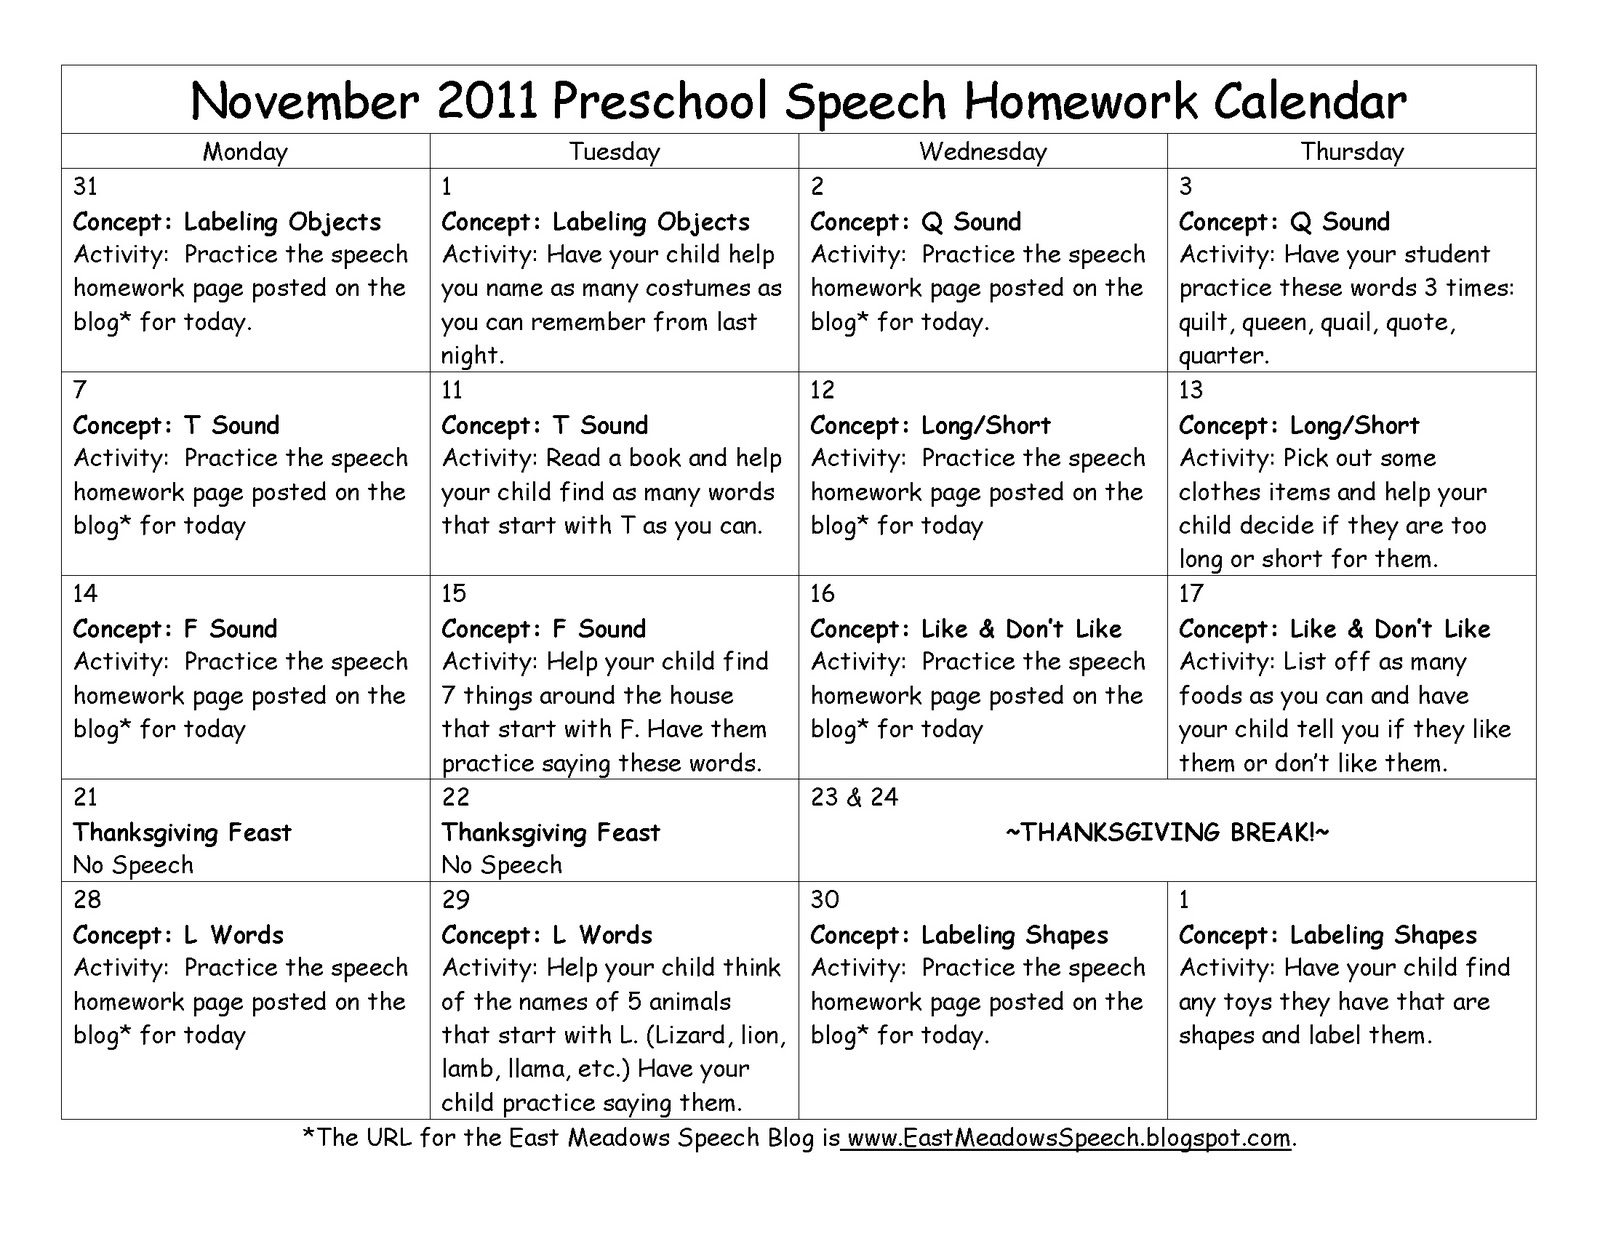 Preschool homework calendar